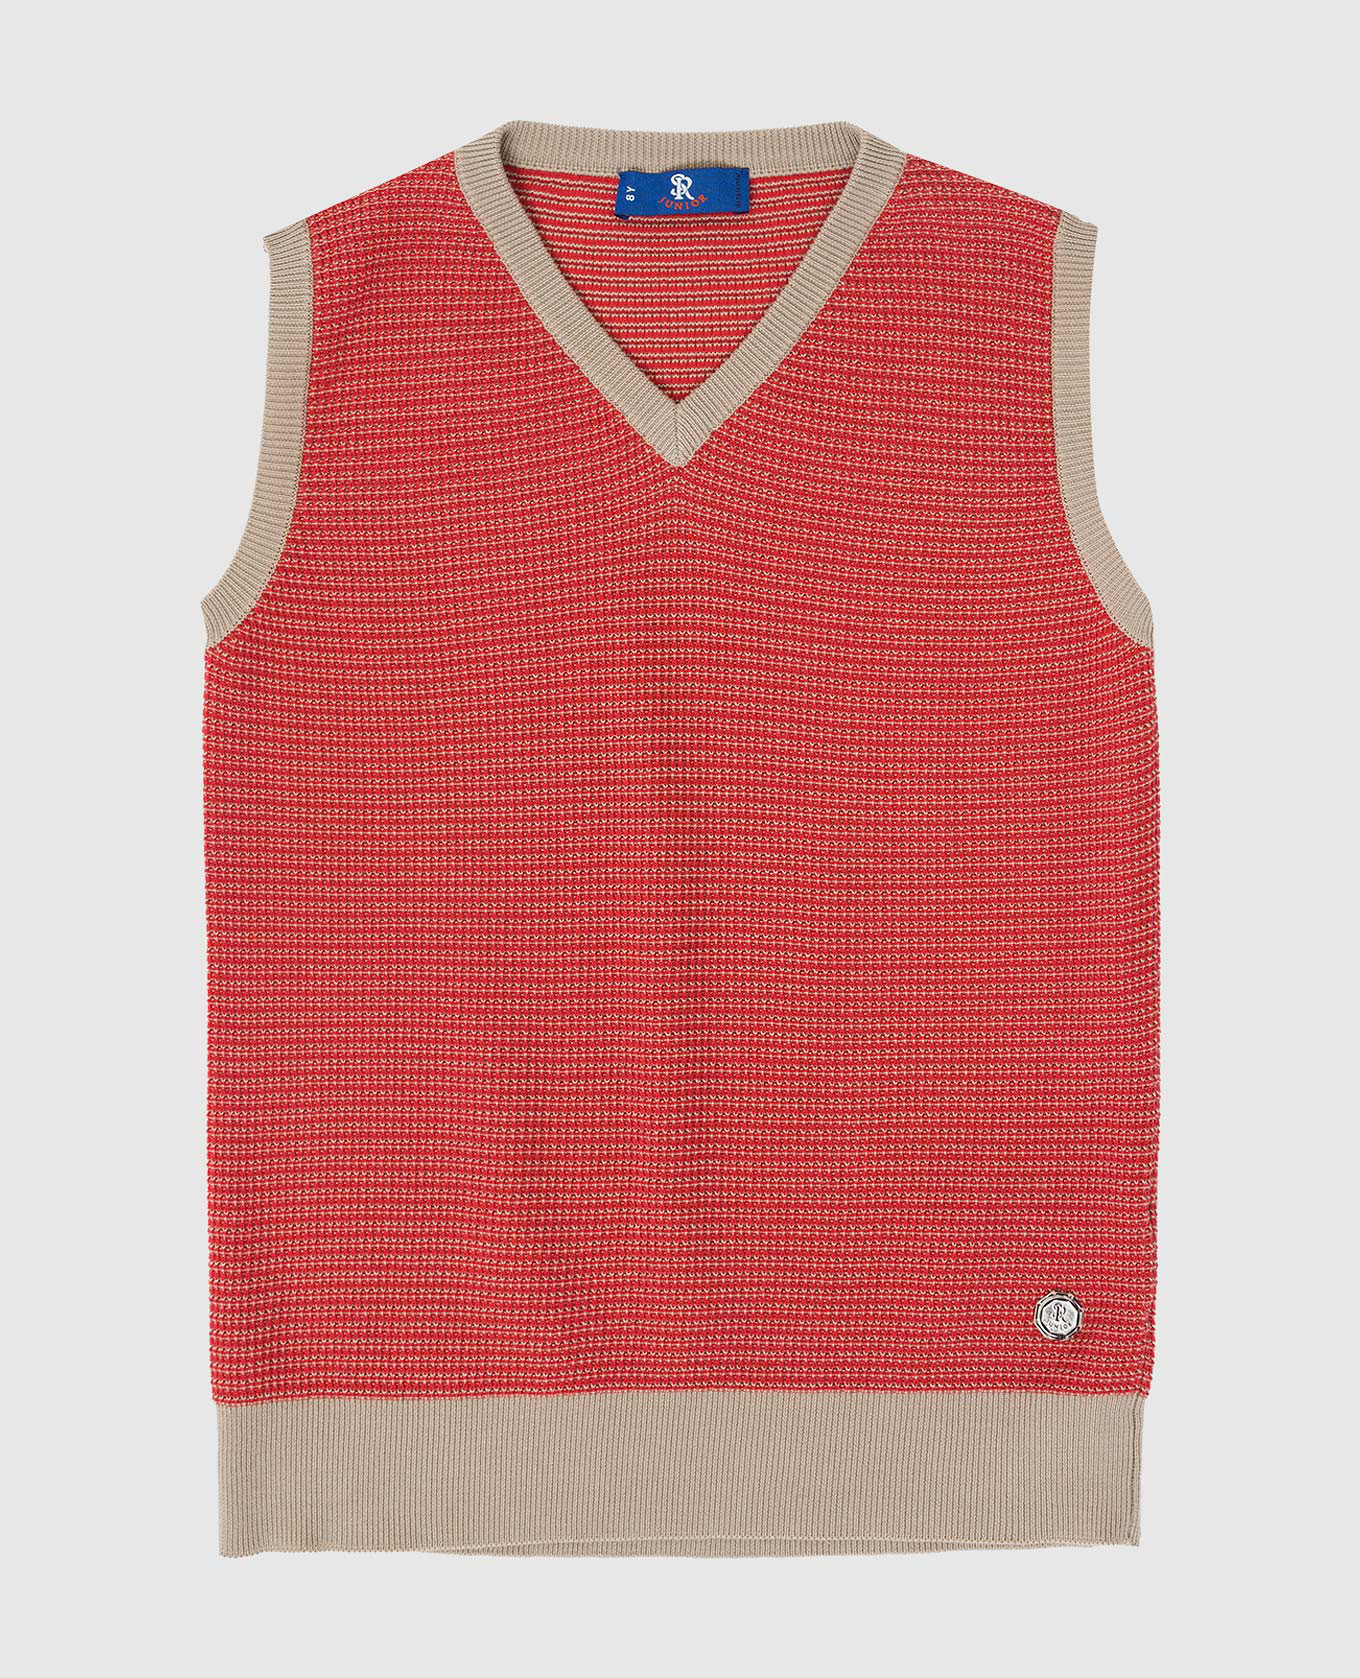 Children's red vest